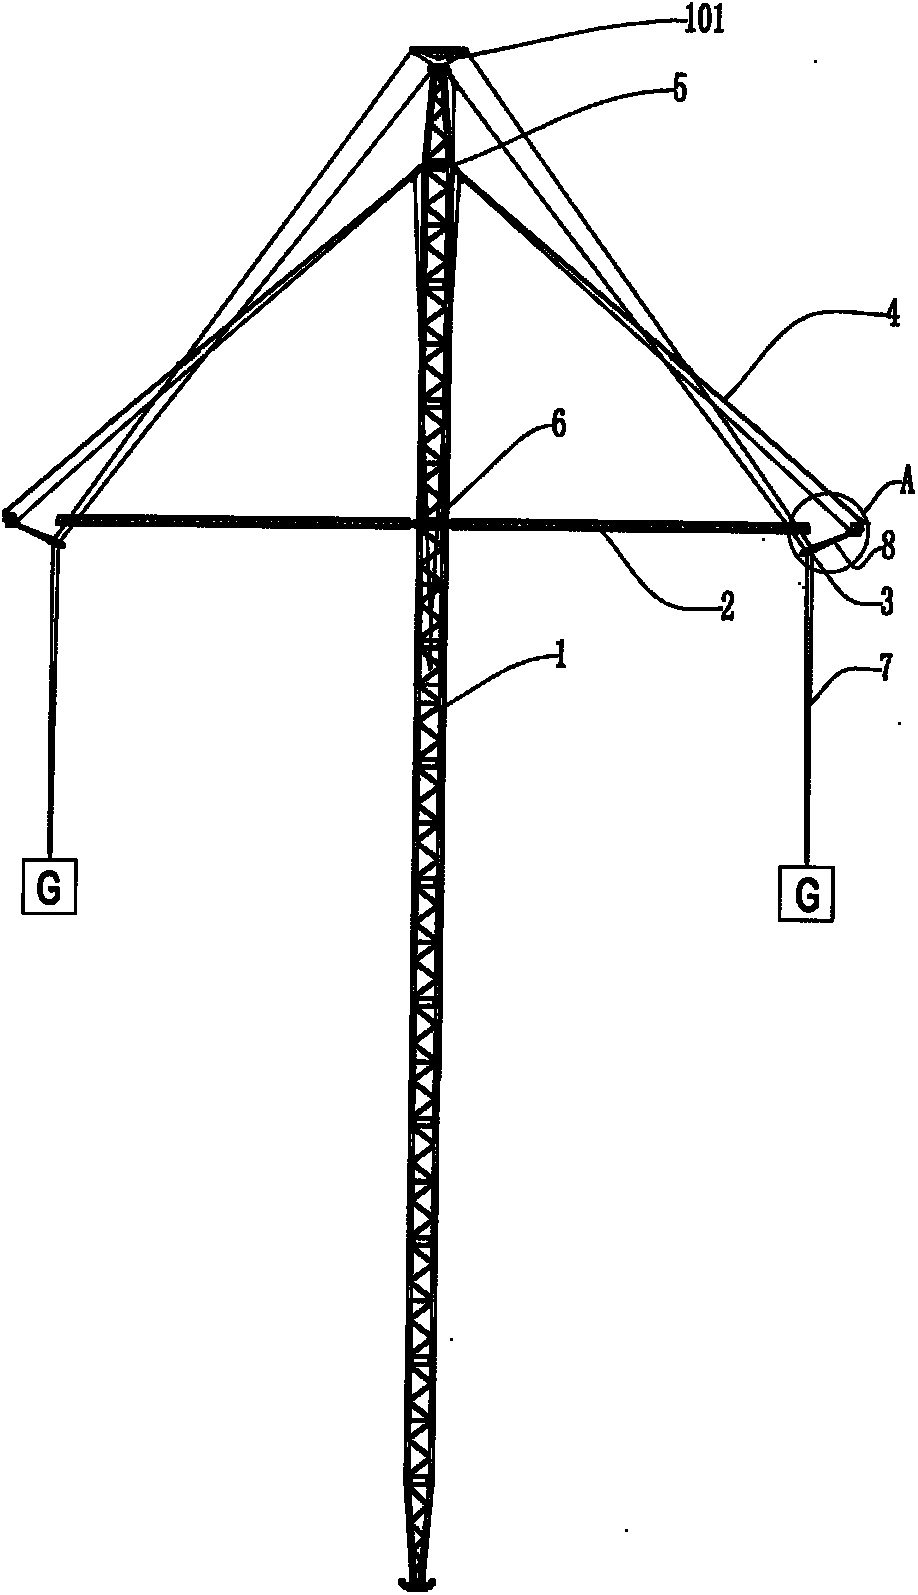 Self-balancing amplitude modulation holding pole